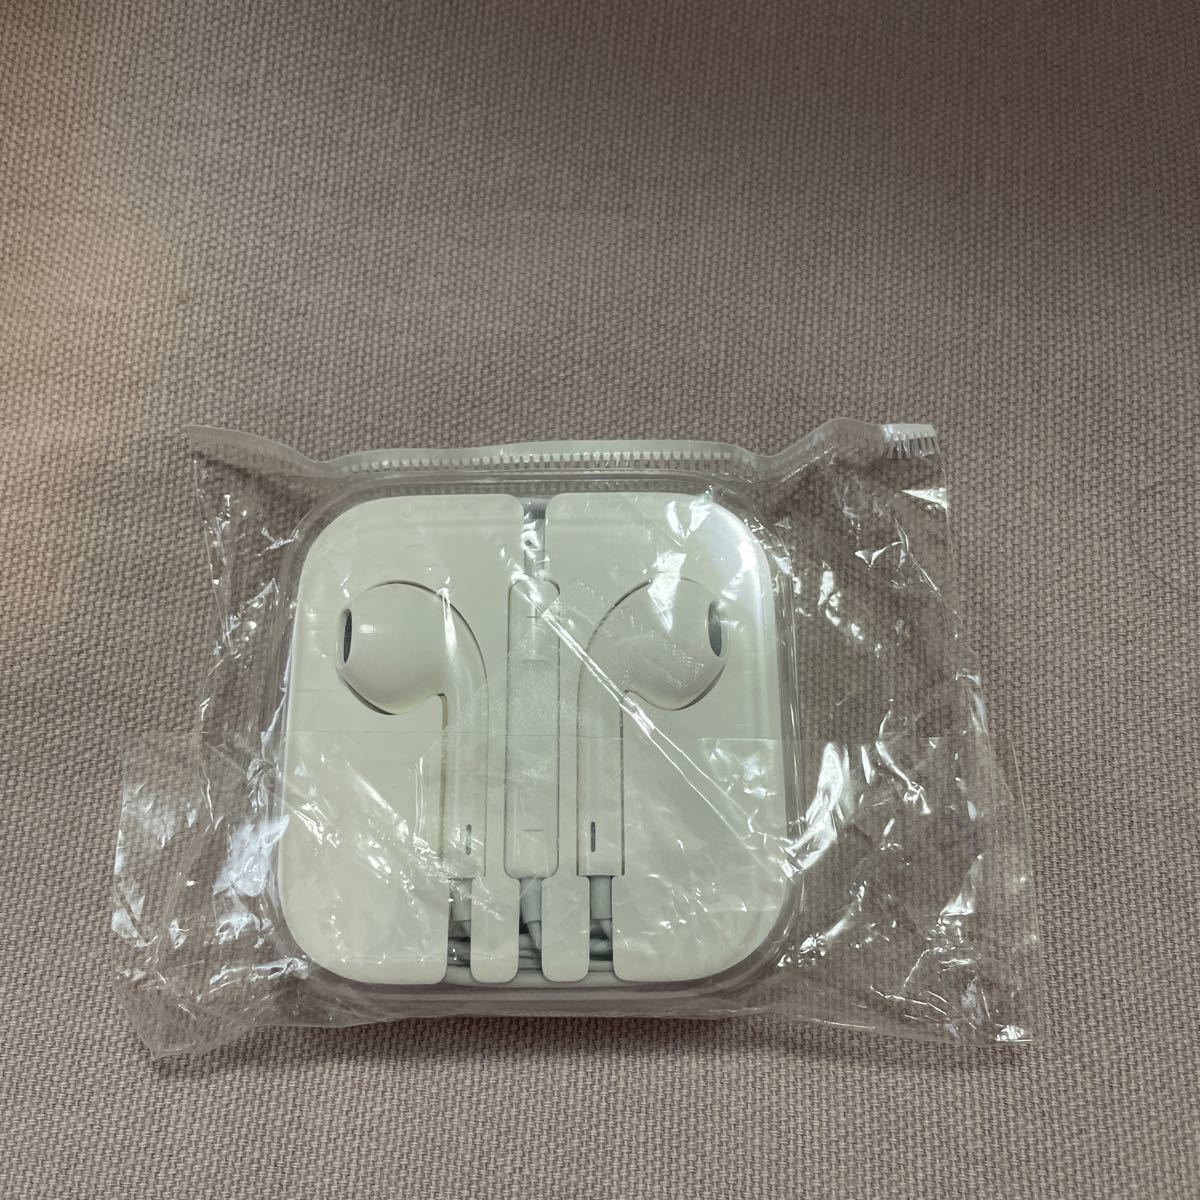 新品未開封品 Apple純正品 イヤホン マイク付き ミニプラグ iPod iPhone iPad EarPods 3.5mm Headphone Plug MD827ZM/B MD827FE/A同等品_画像1